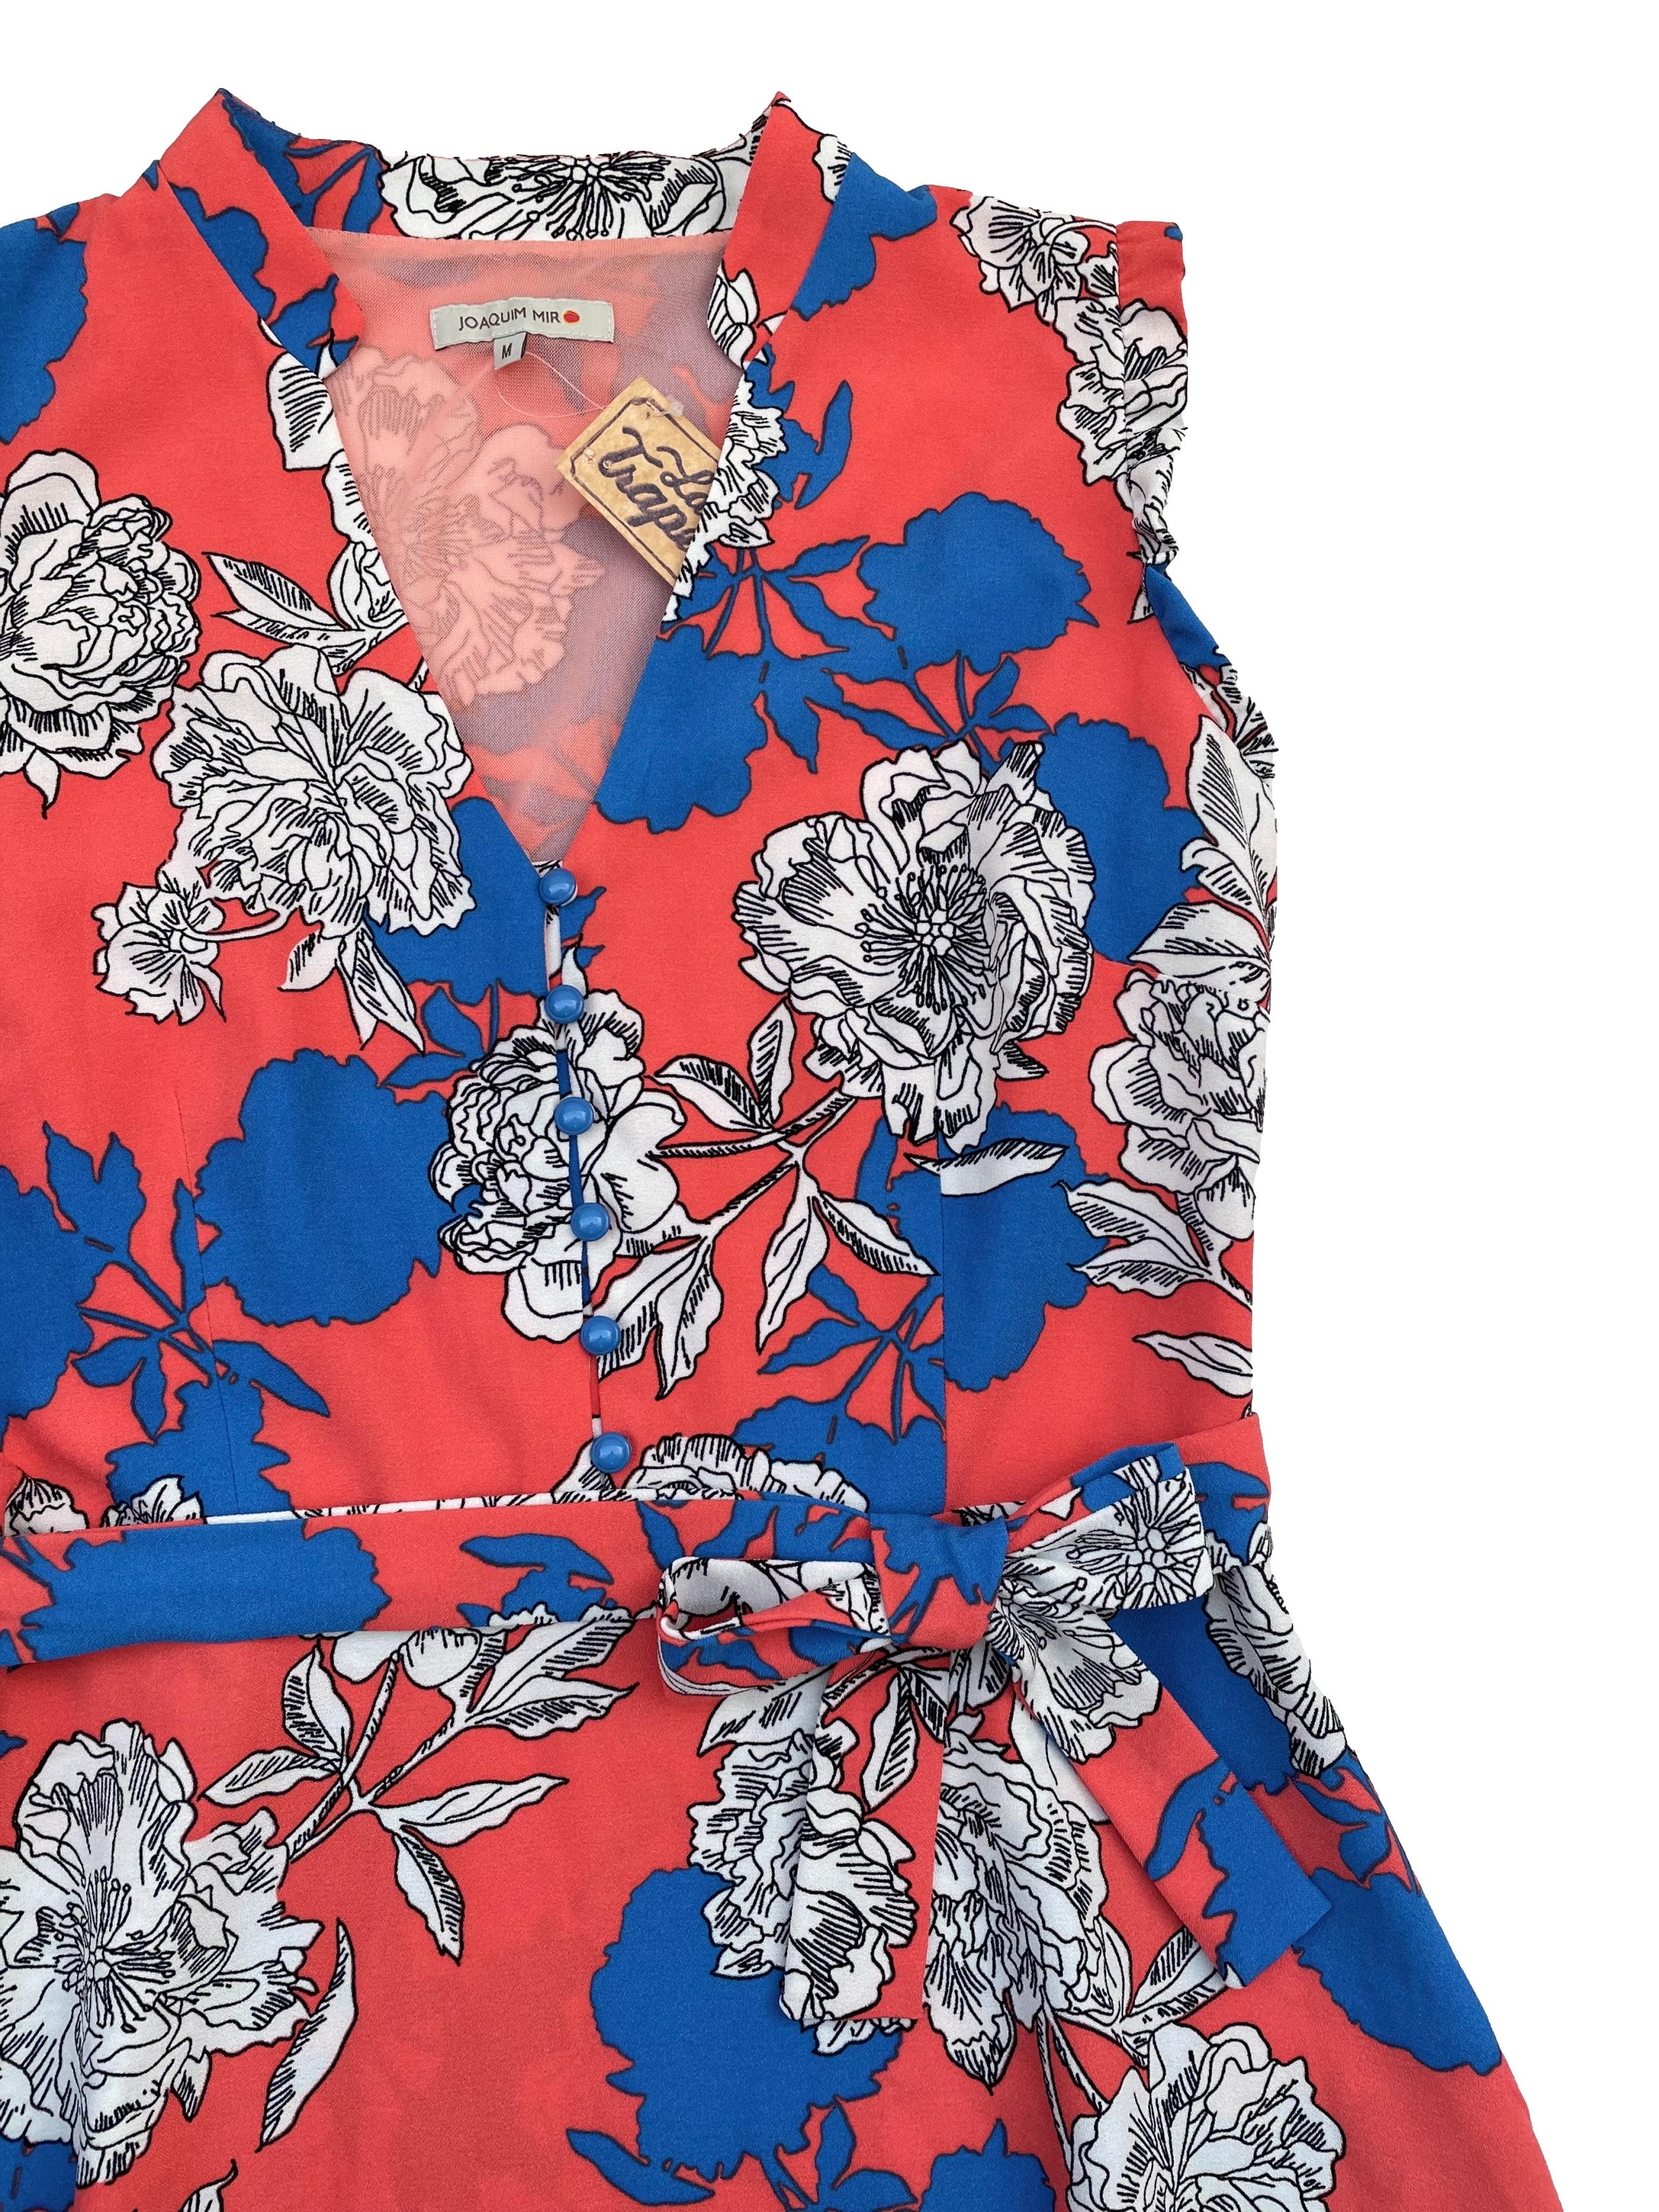 Vestido Joaquim Miro tela tipo crepé coral con estampado de flores azules blanco y negro, forro mesh en parte superior, escote en V, cinto para regular, falda en A y cierre lateral. Busto 100cm Cintura 80cm Largo 95cm. Precio original S/ 289